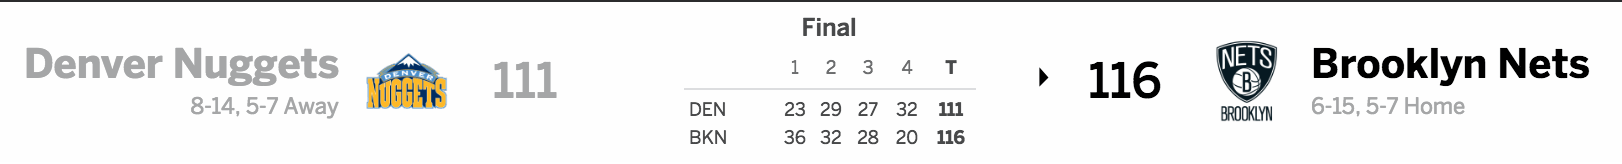 Brooklyn Nets vs. Denver Nuggets 12/7/16 Score